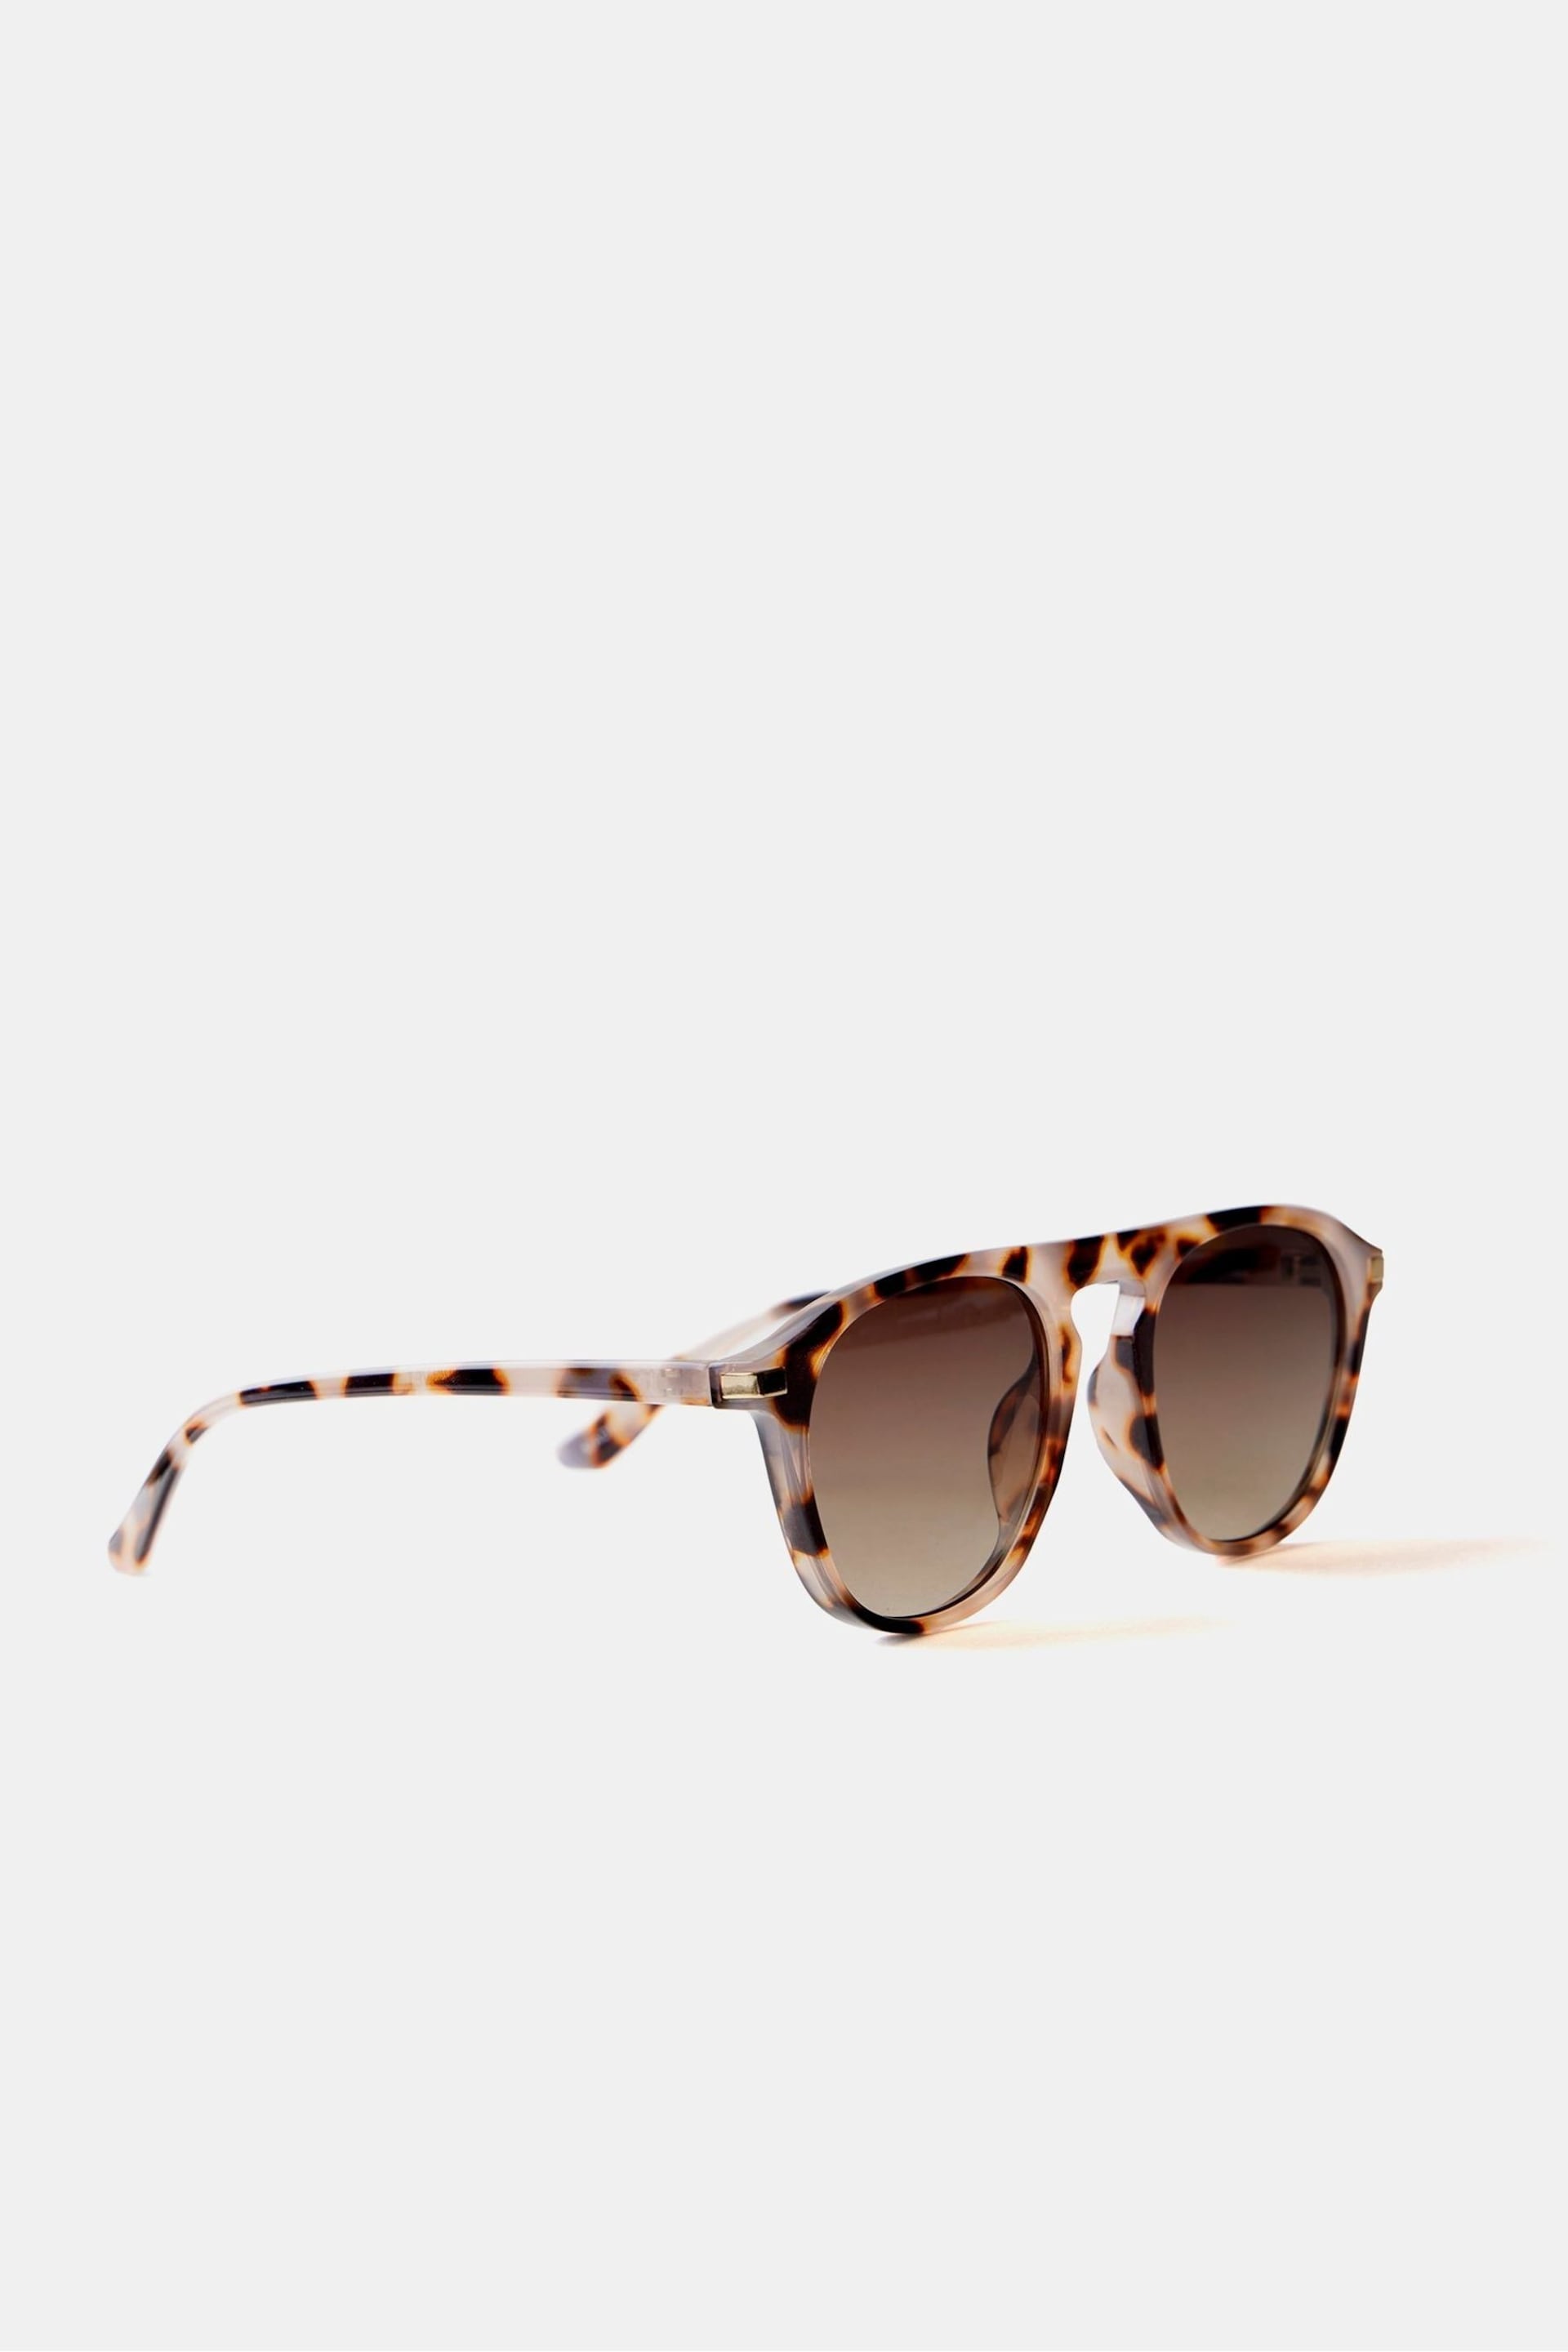 Mint Velvet Brown Tortoiseshell Sunglasses - Image 1 of 6